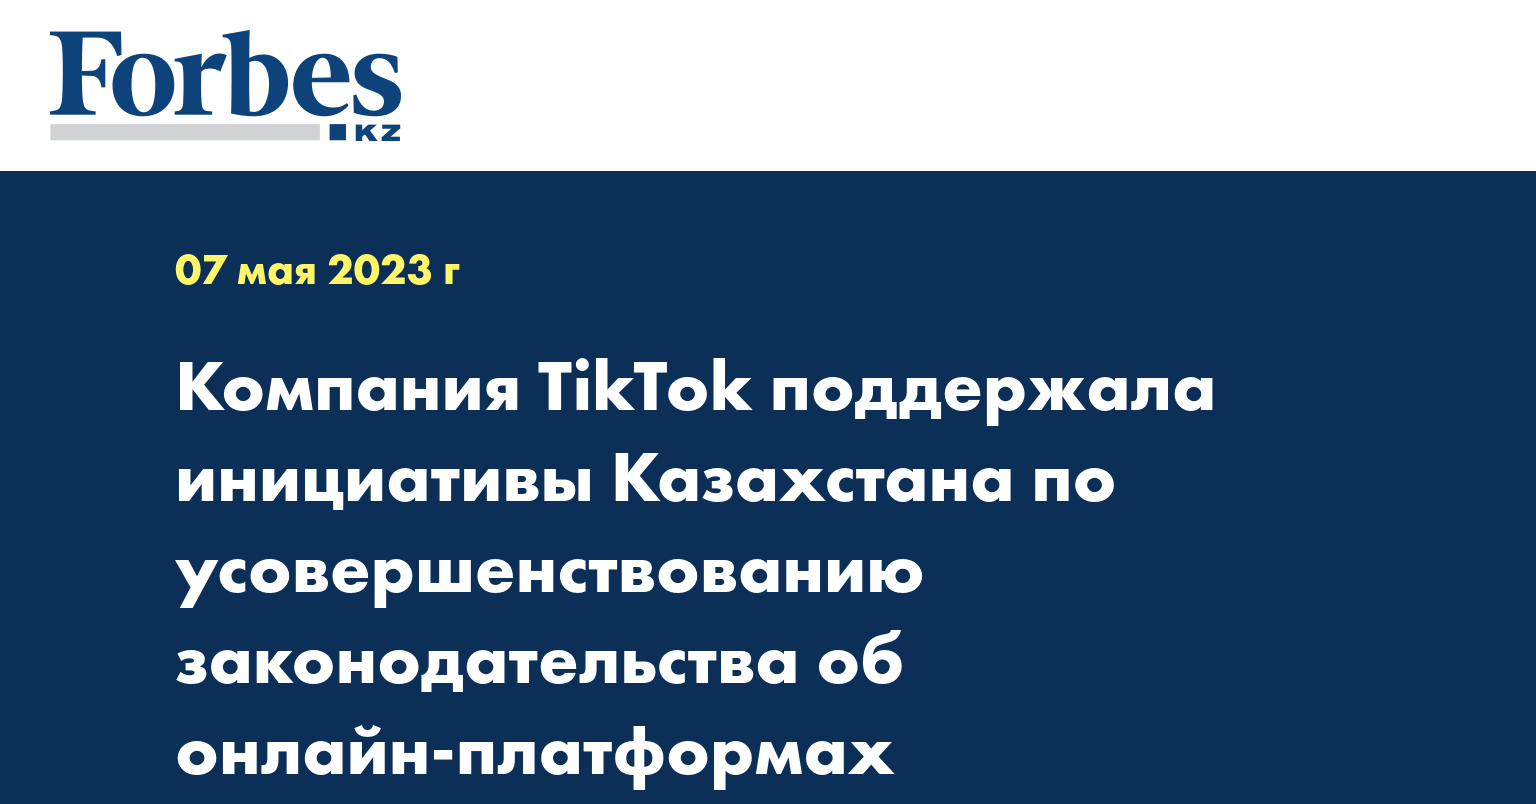 Компания TikTok поддержала инициативы Казахстана по усовершенствованию законодательства об онлайн-платформах